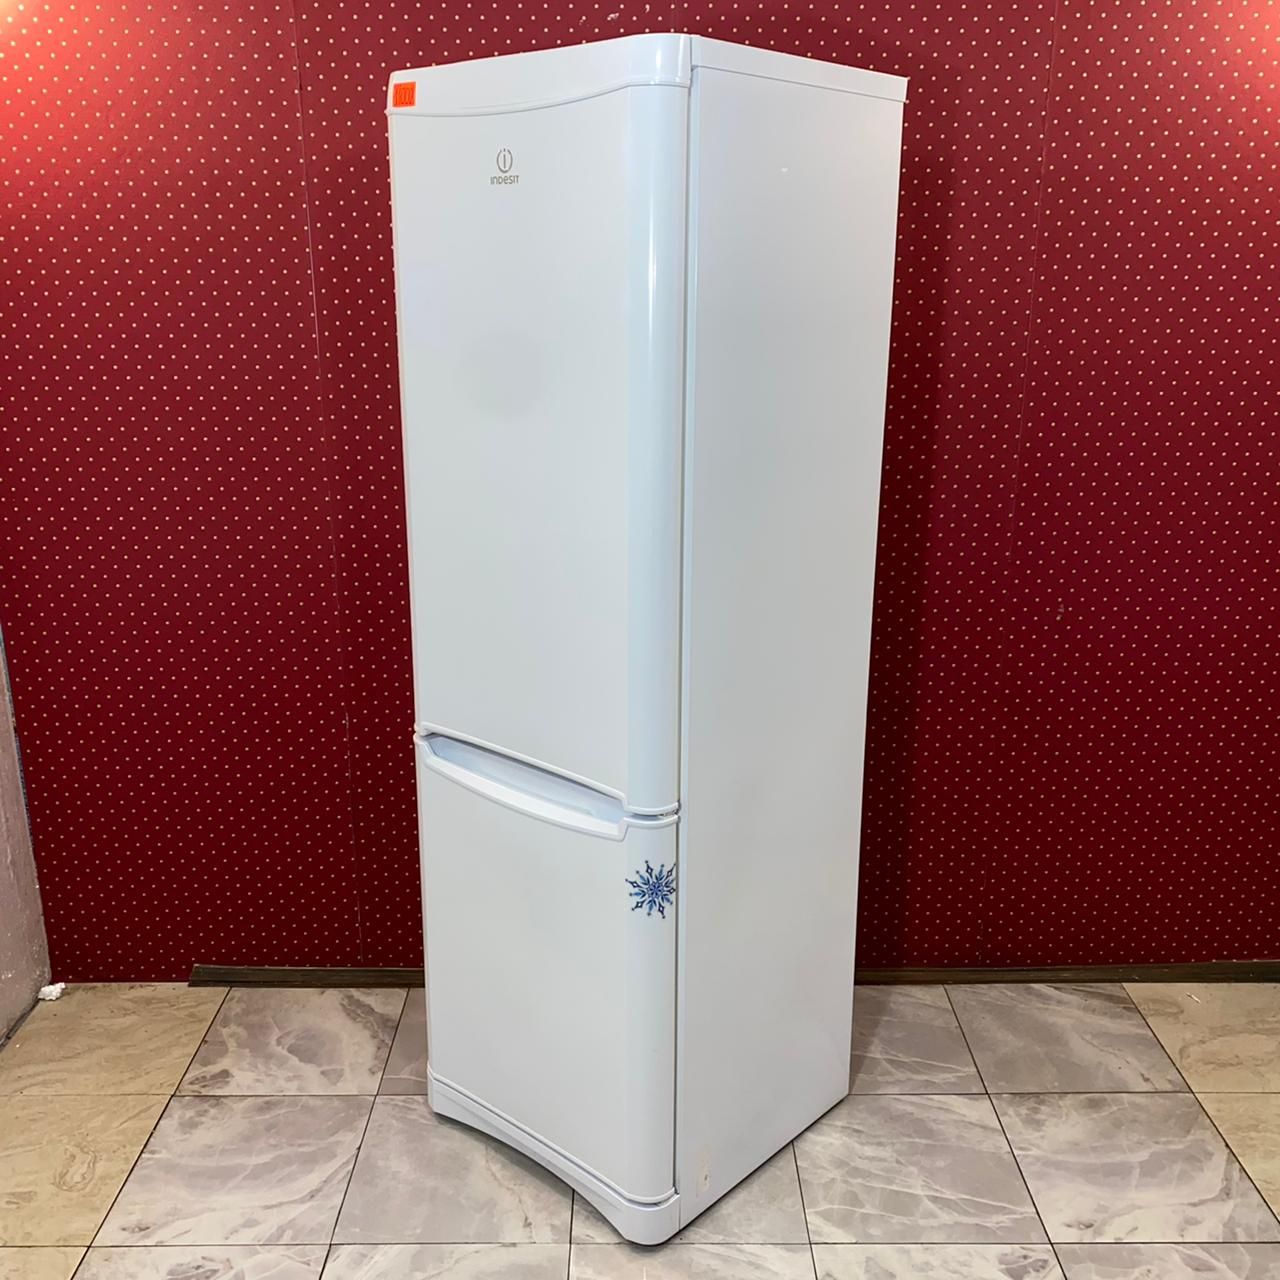 холодильники индезит цены фото